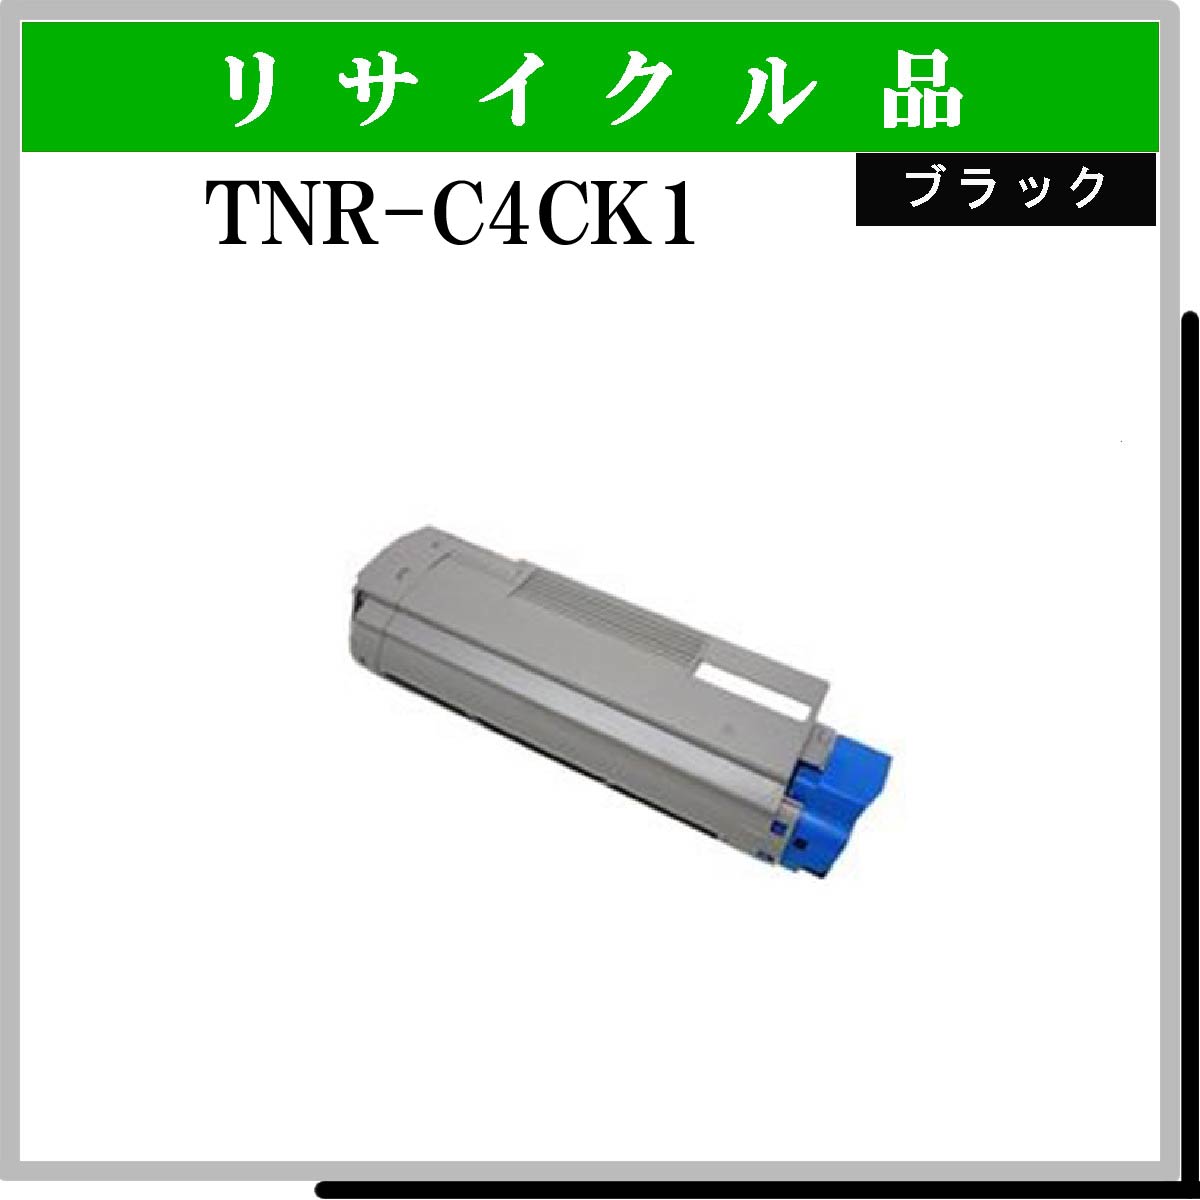 TNR-C4CK1